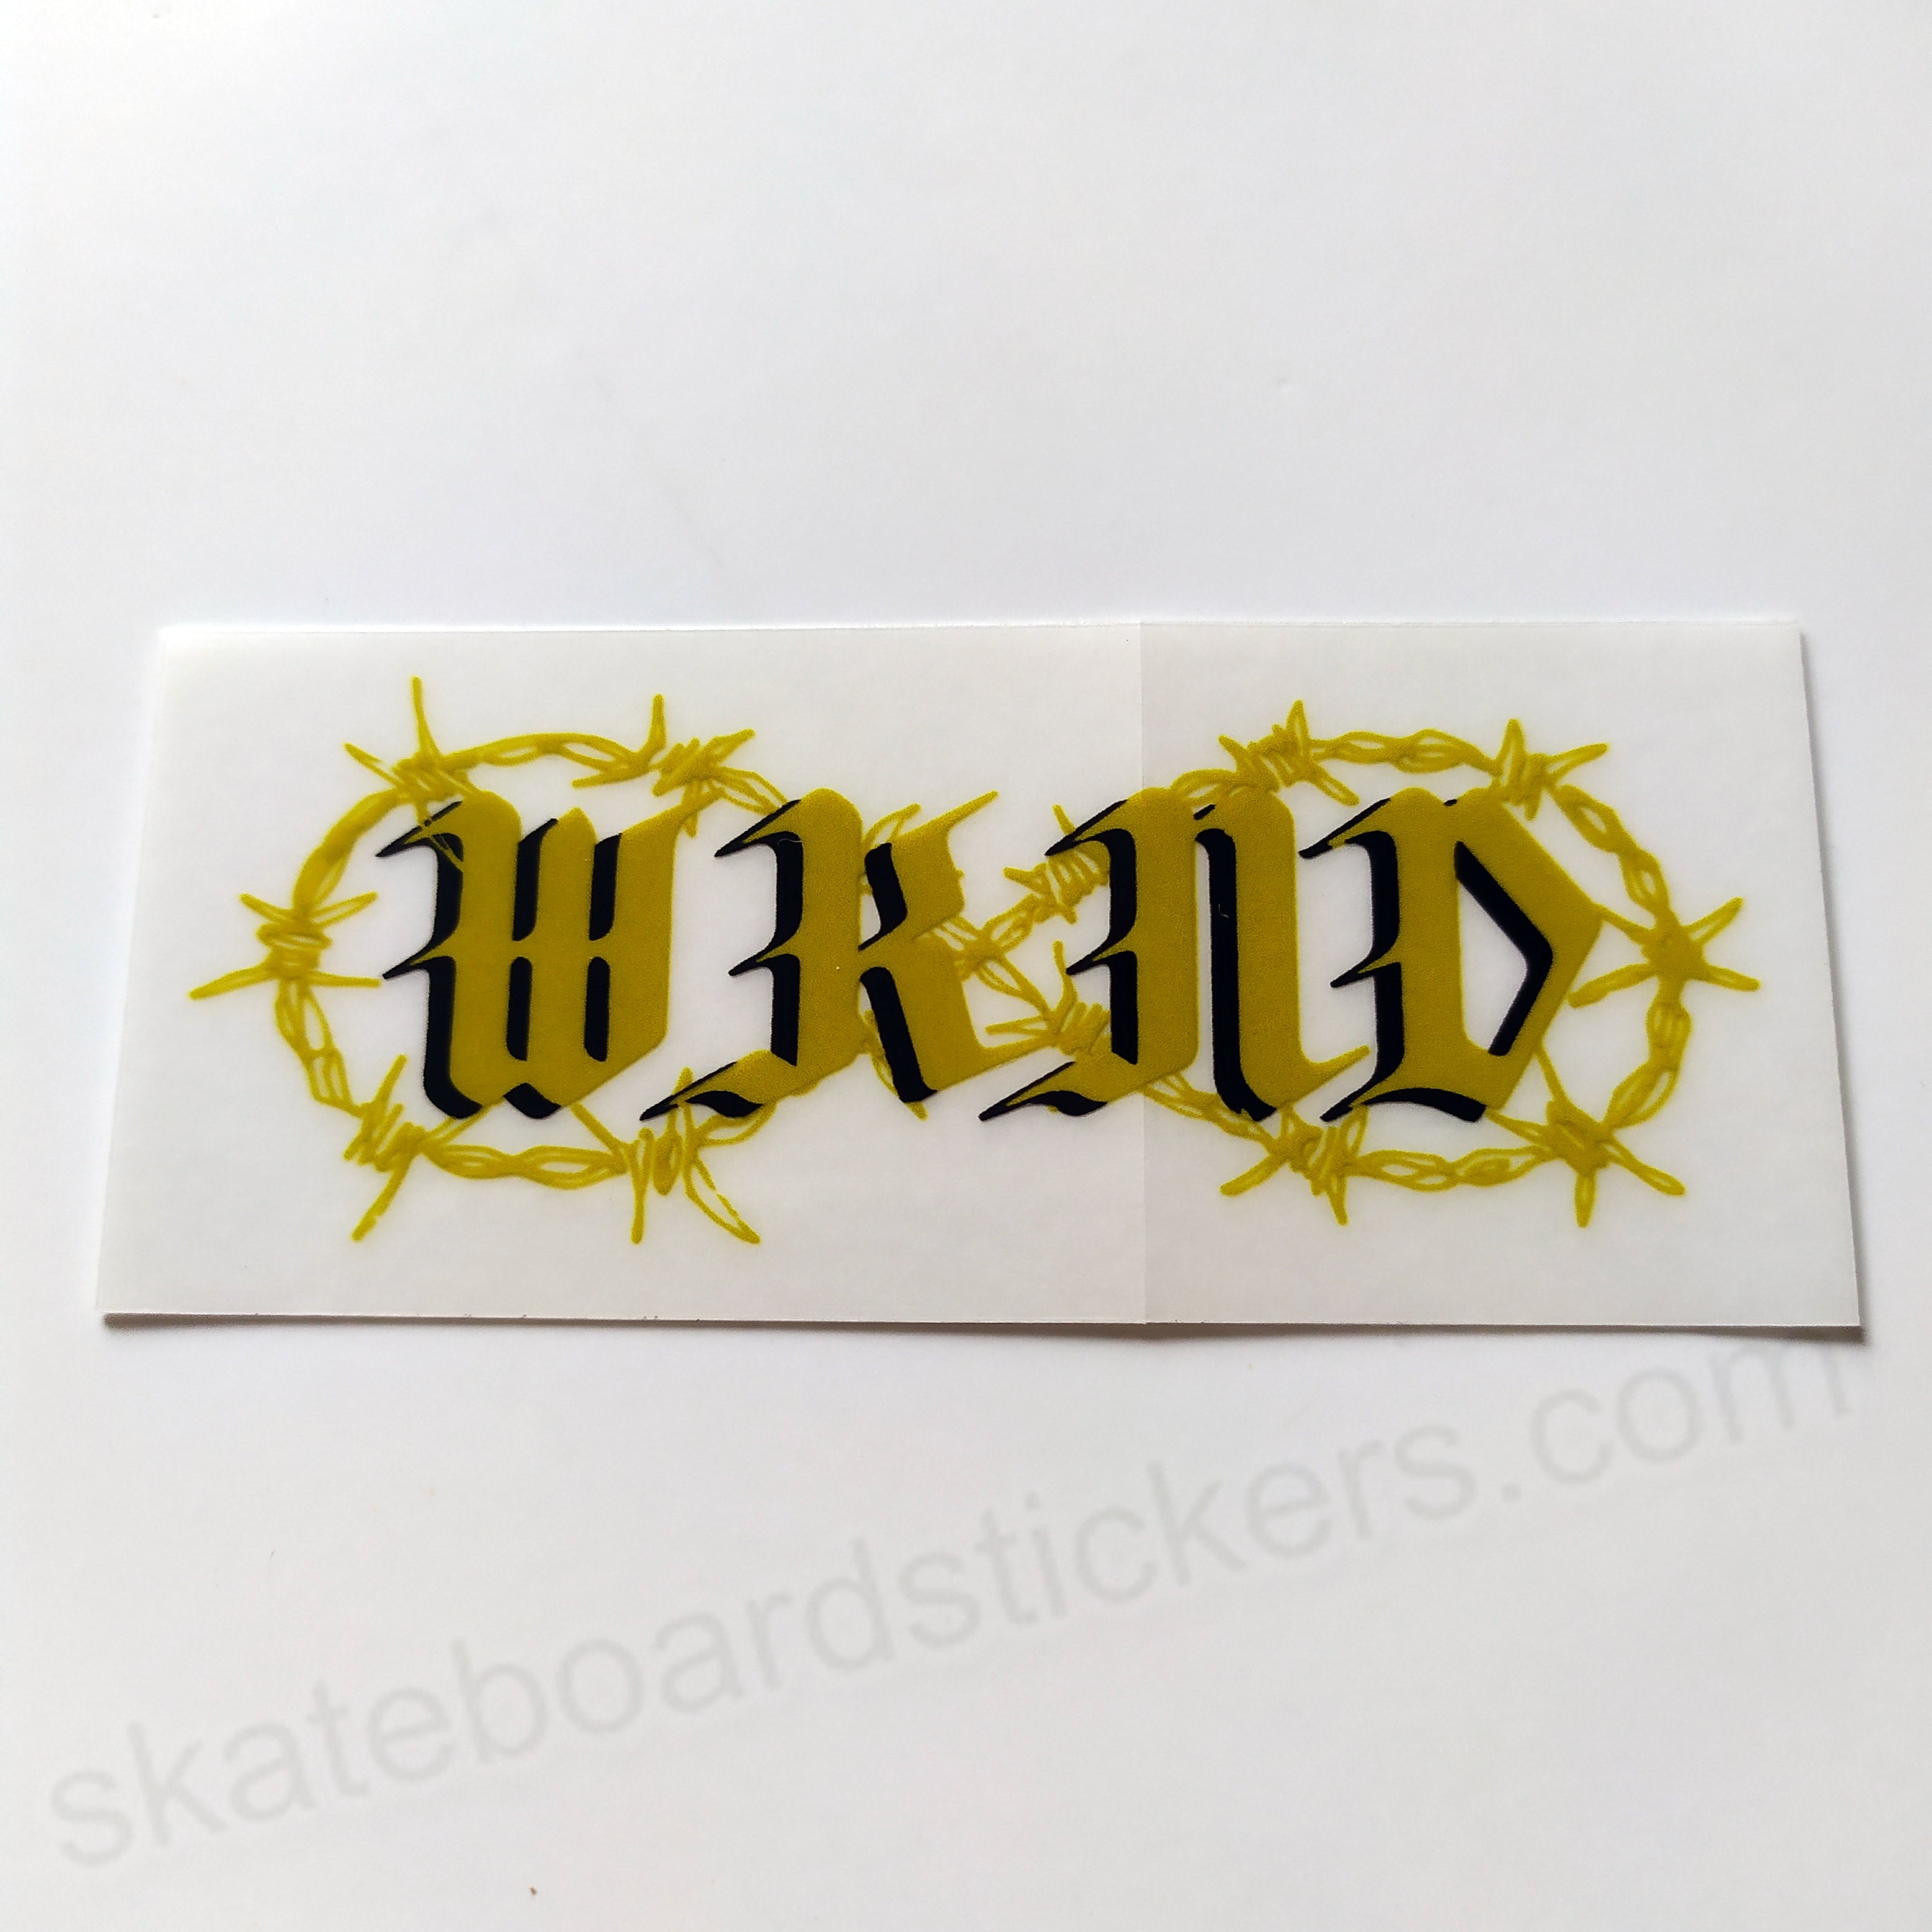 WKND Skateboards Skateboard Sticker - 7cm across approx - SkateboardStickers.com